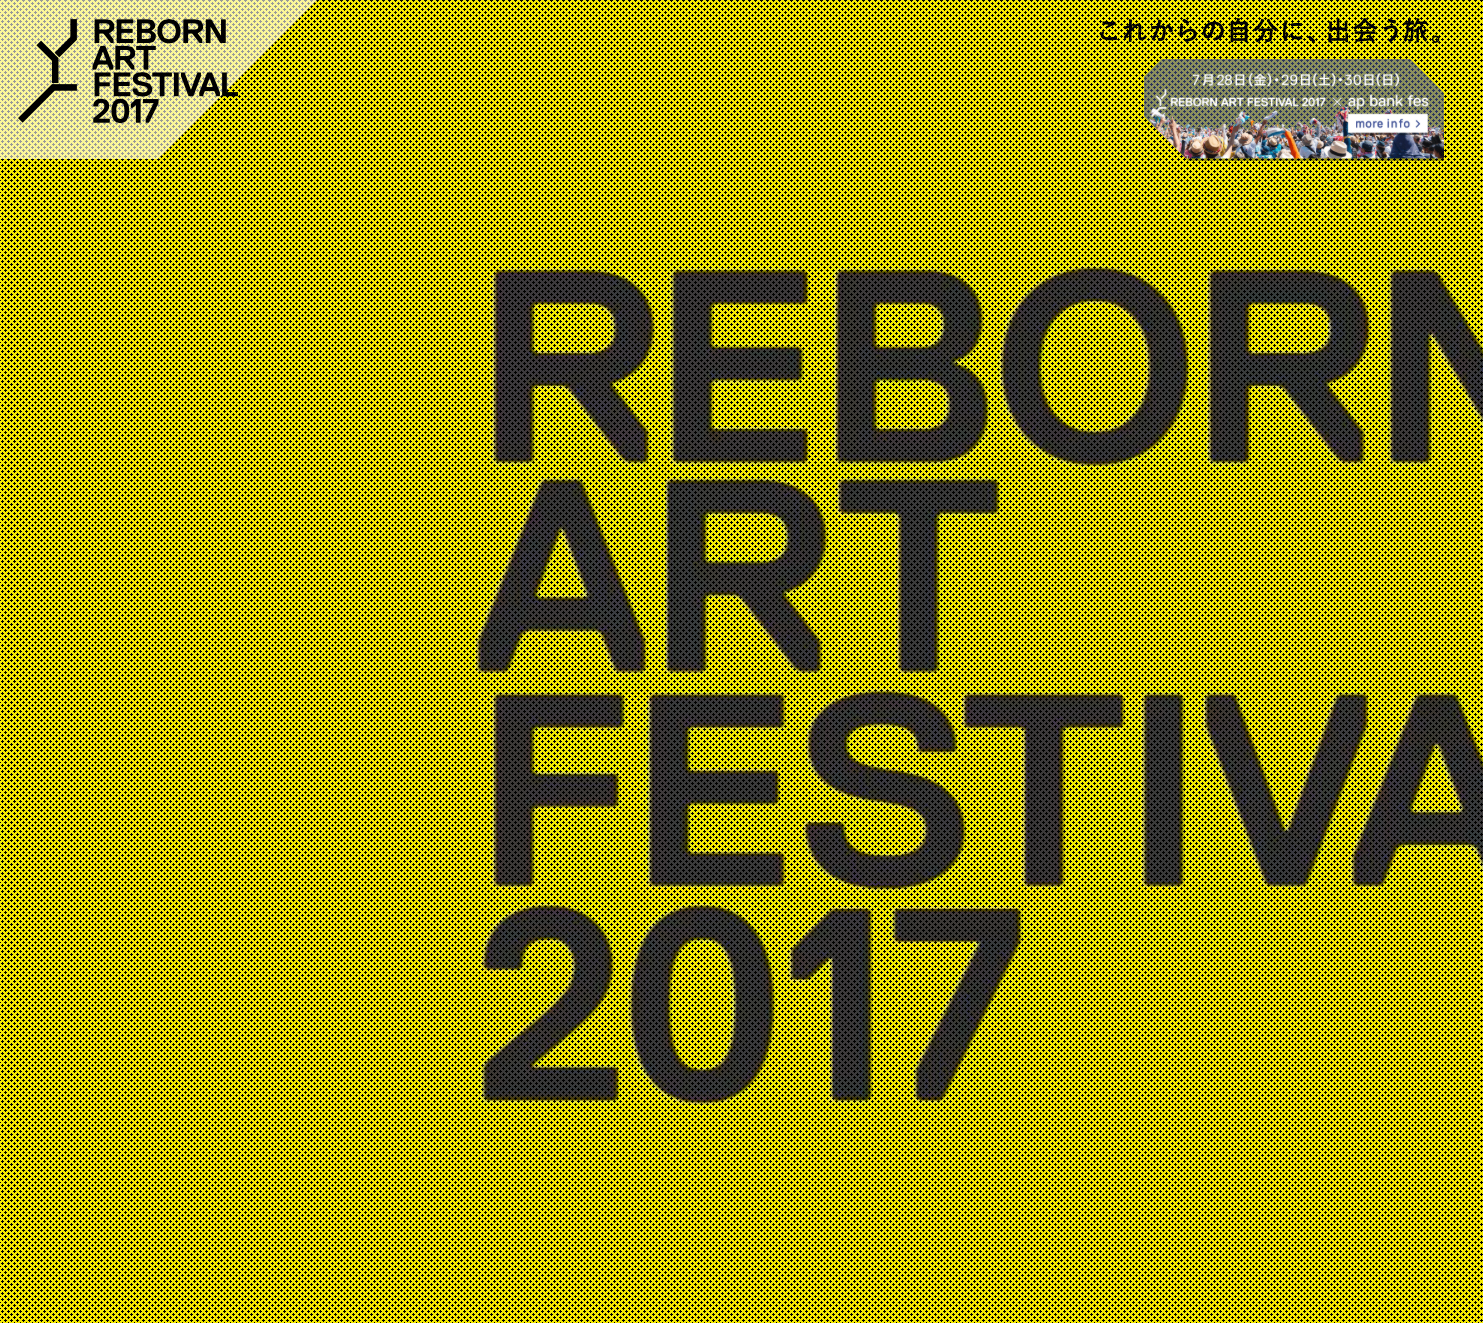 RE BORN ART FESTIVAL 2017